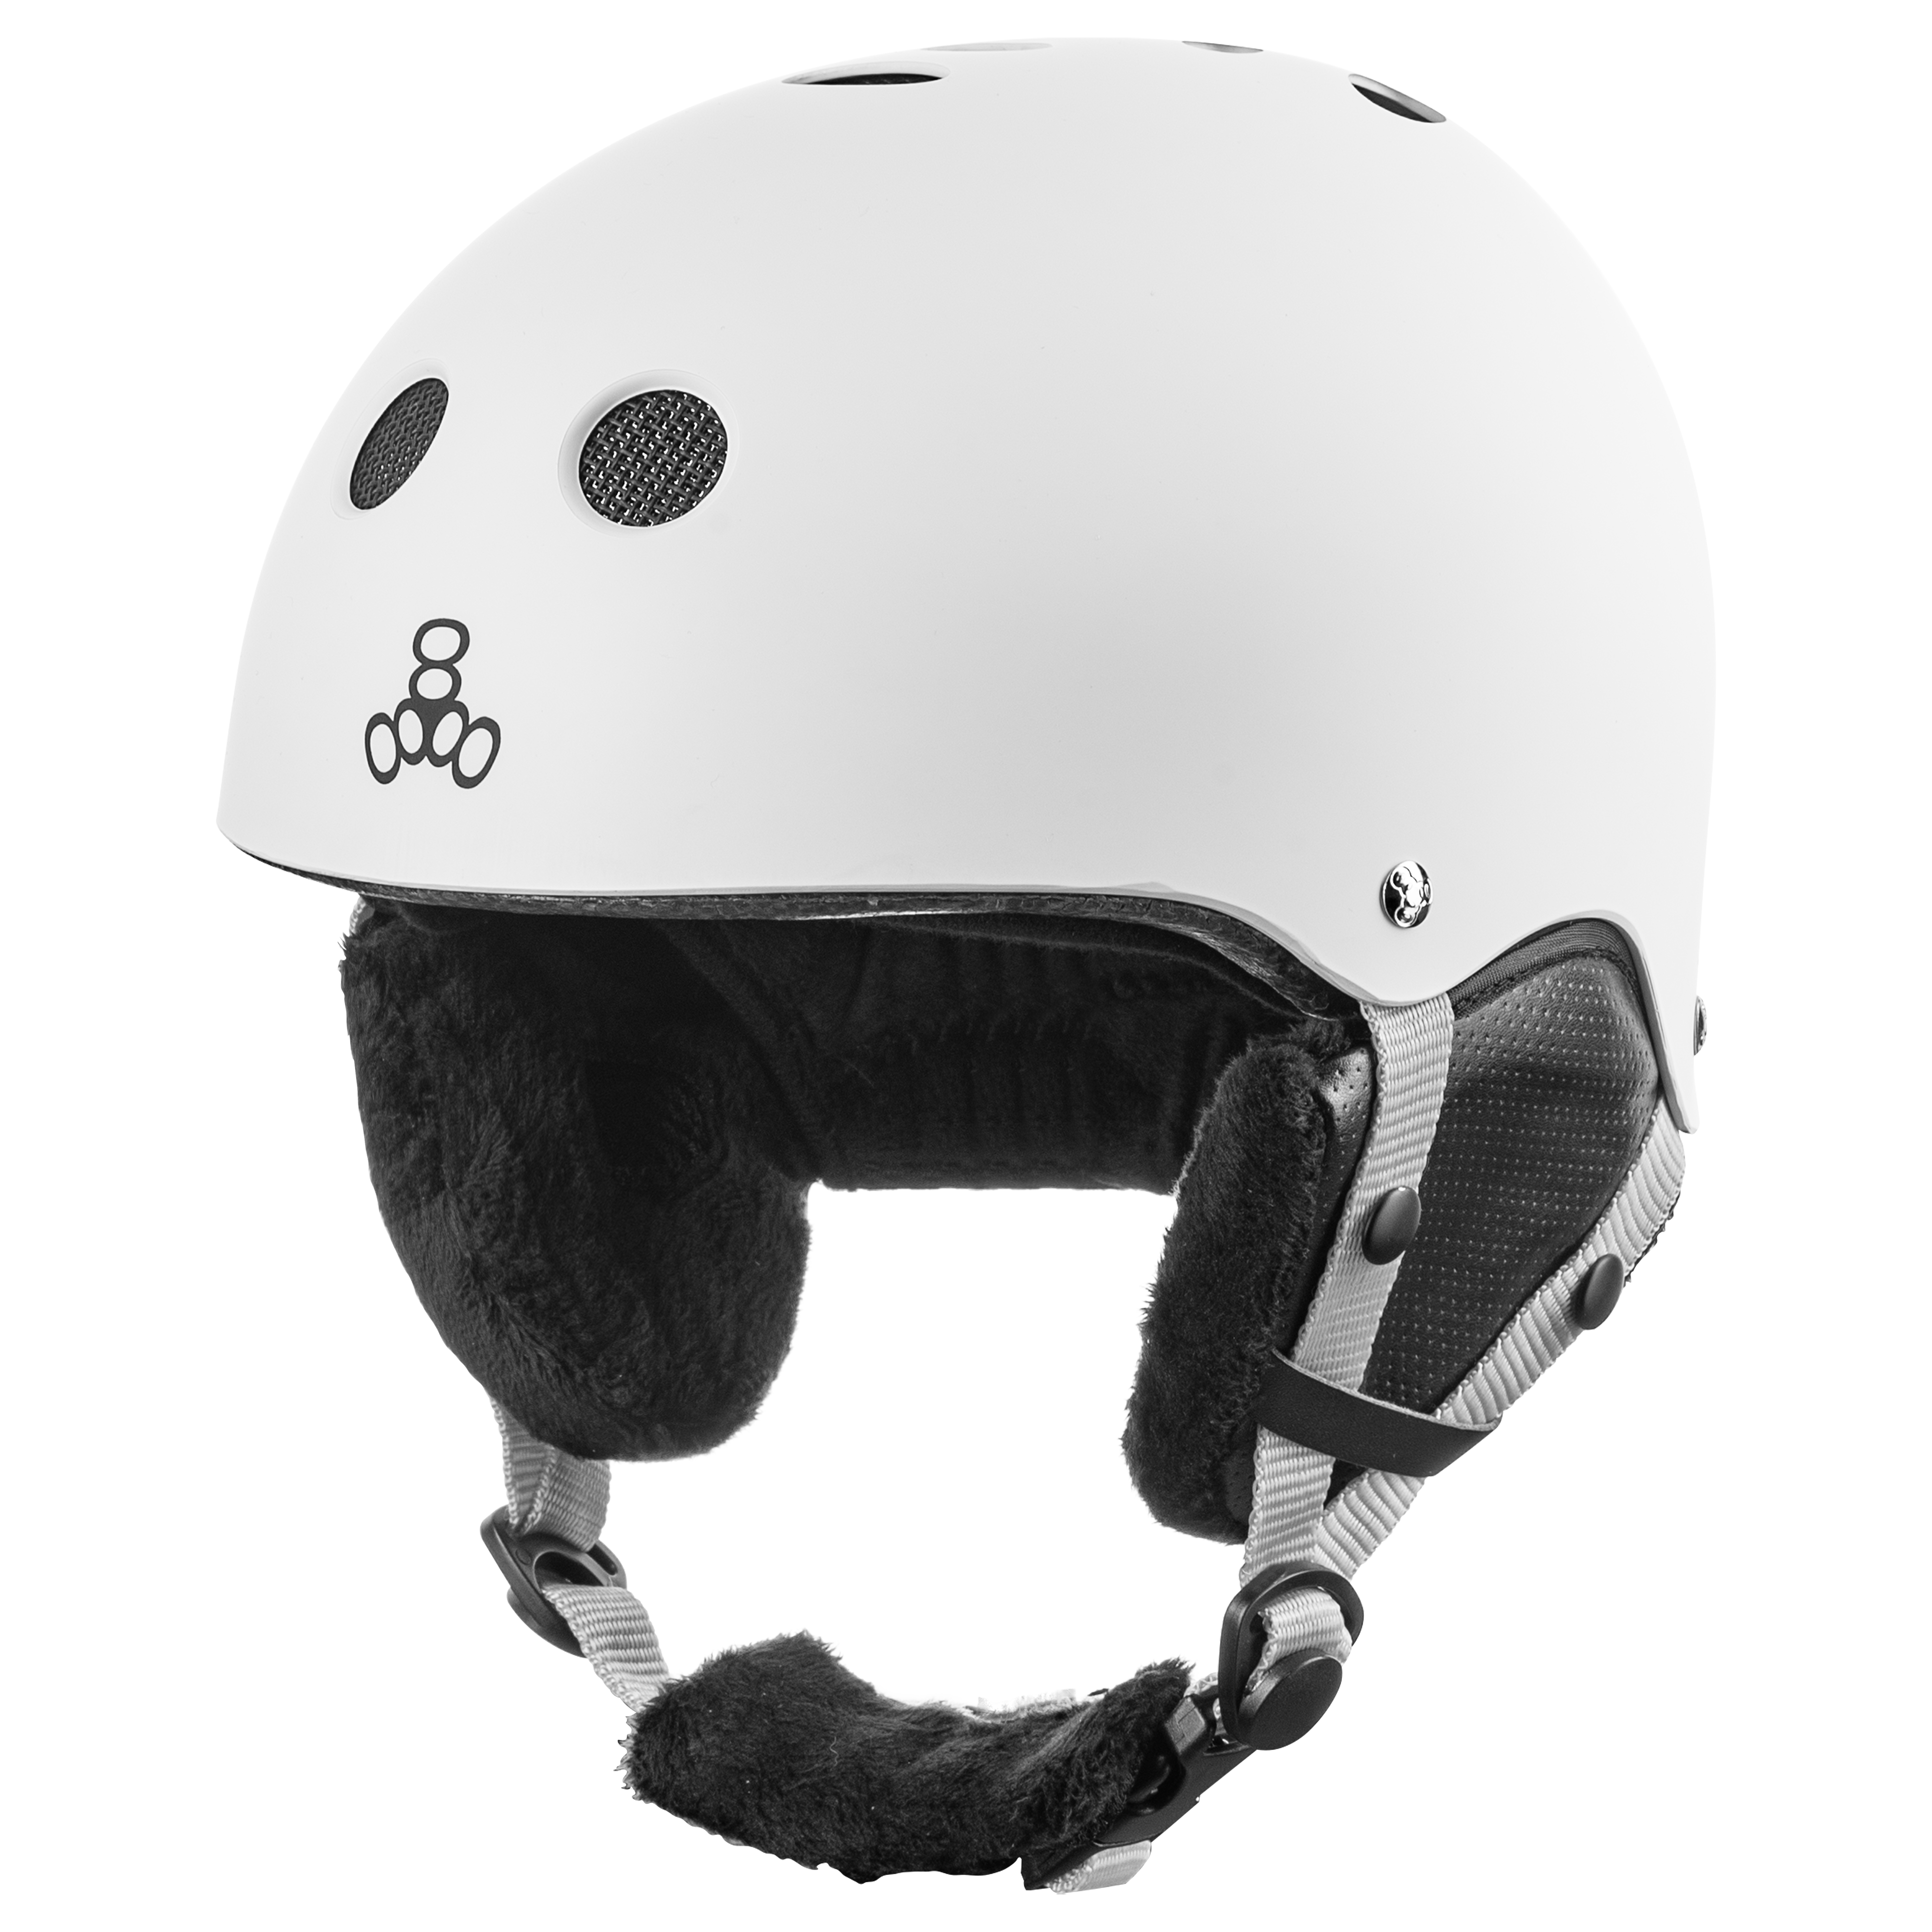 Купить шлем с вентиляцией Triple8 Halo Snow Standart White Rubber (S/M) в Киеве